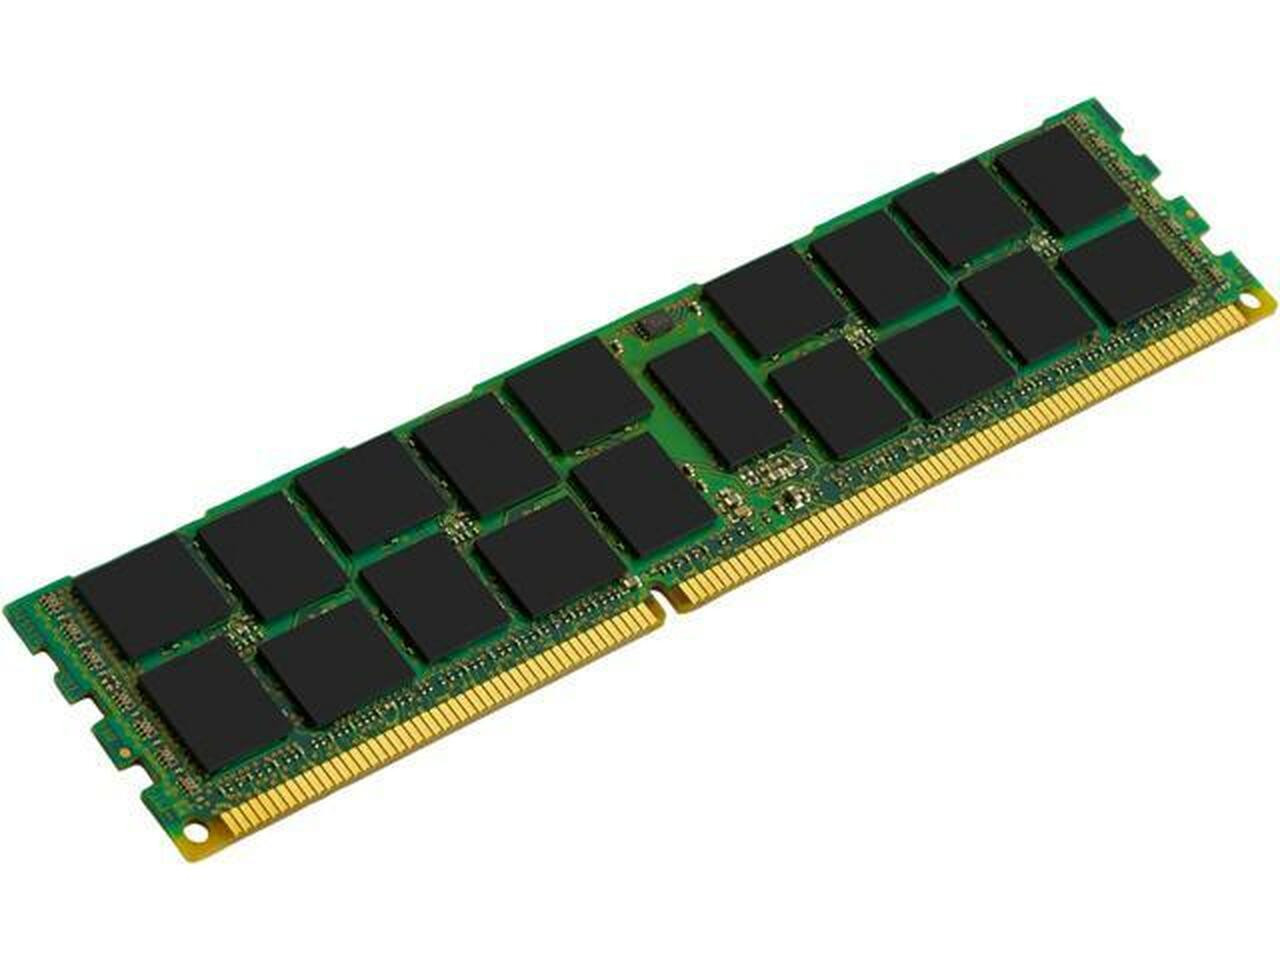 Netpatibles 8GB DDR4 SDRAM Memory Module - S26361-F3843-L514NPM